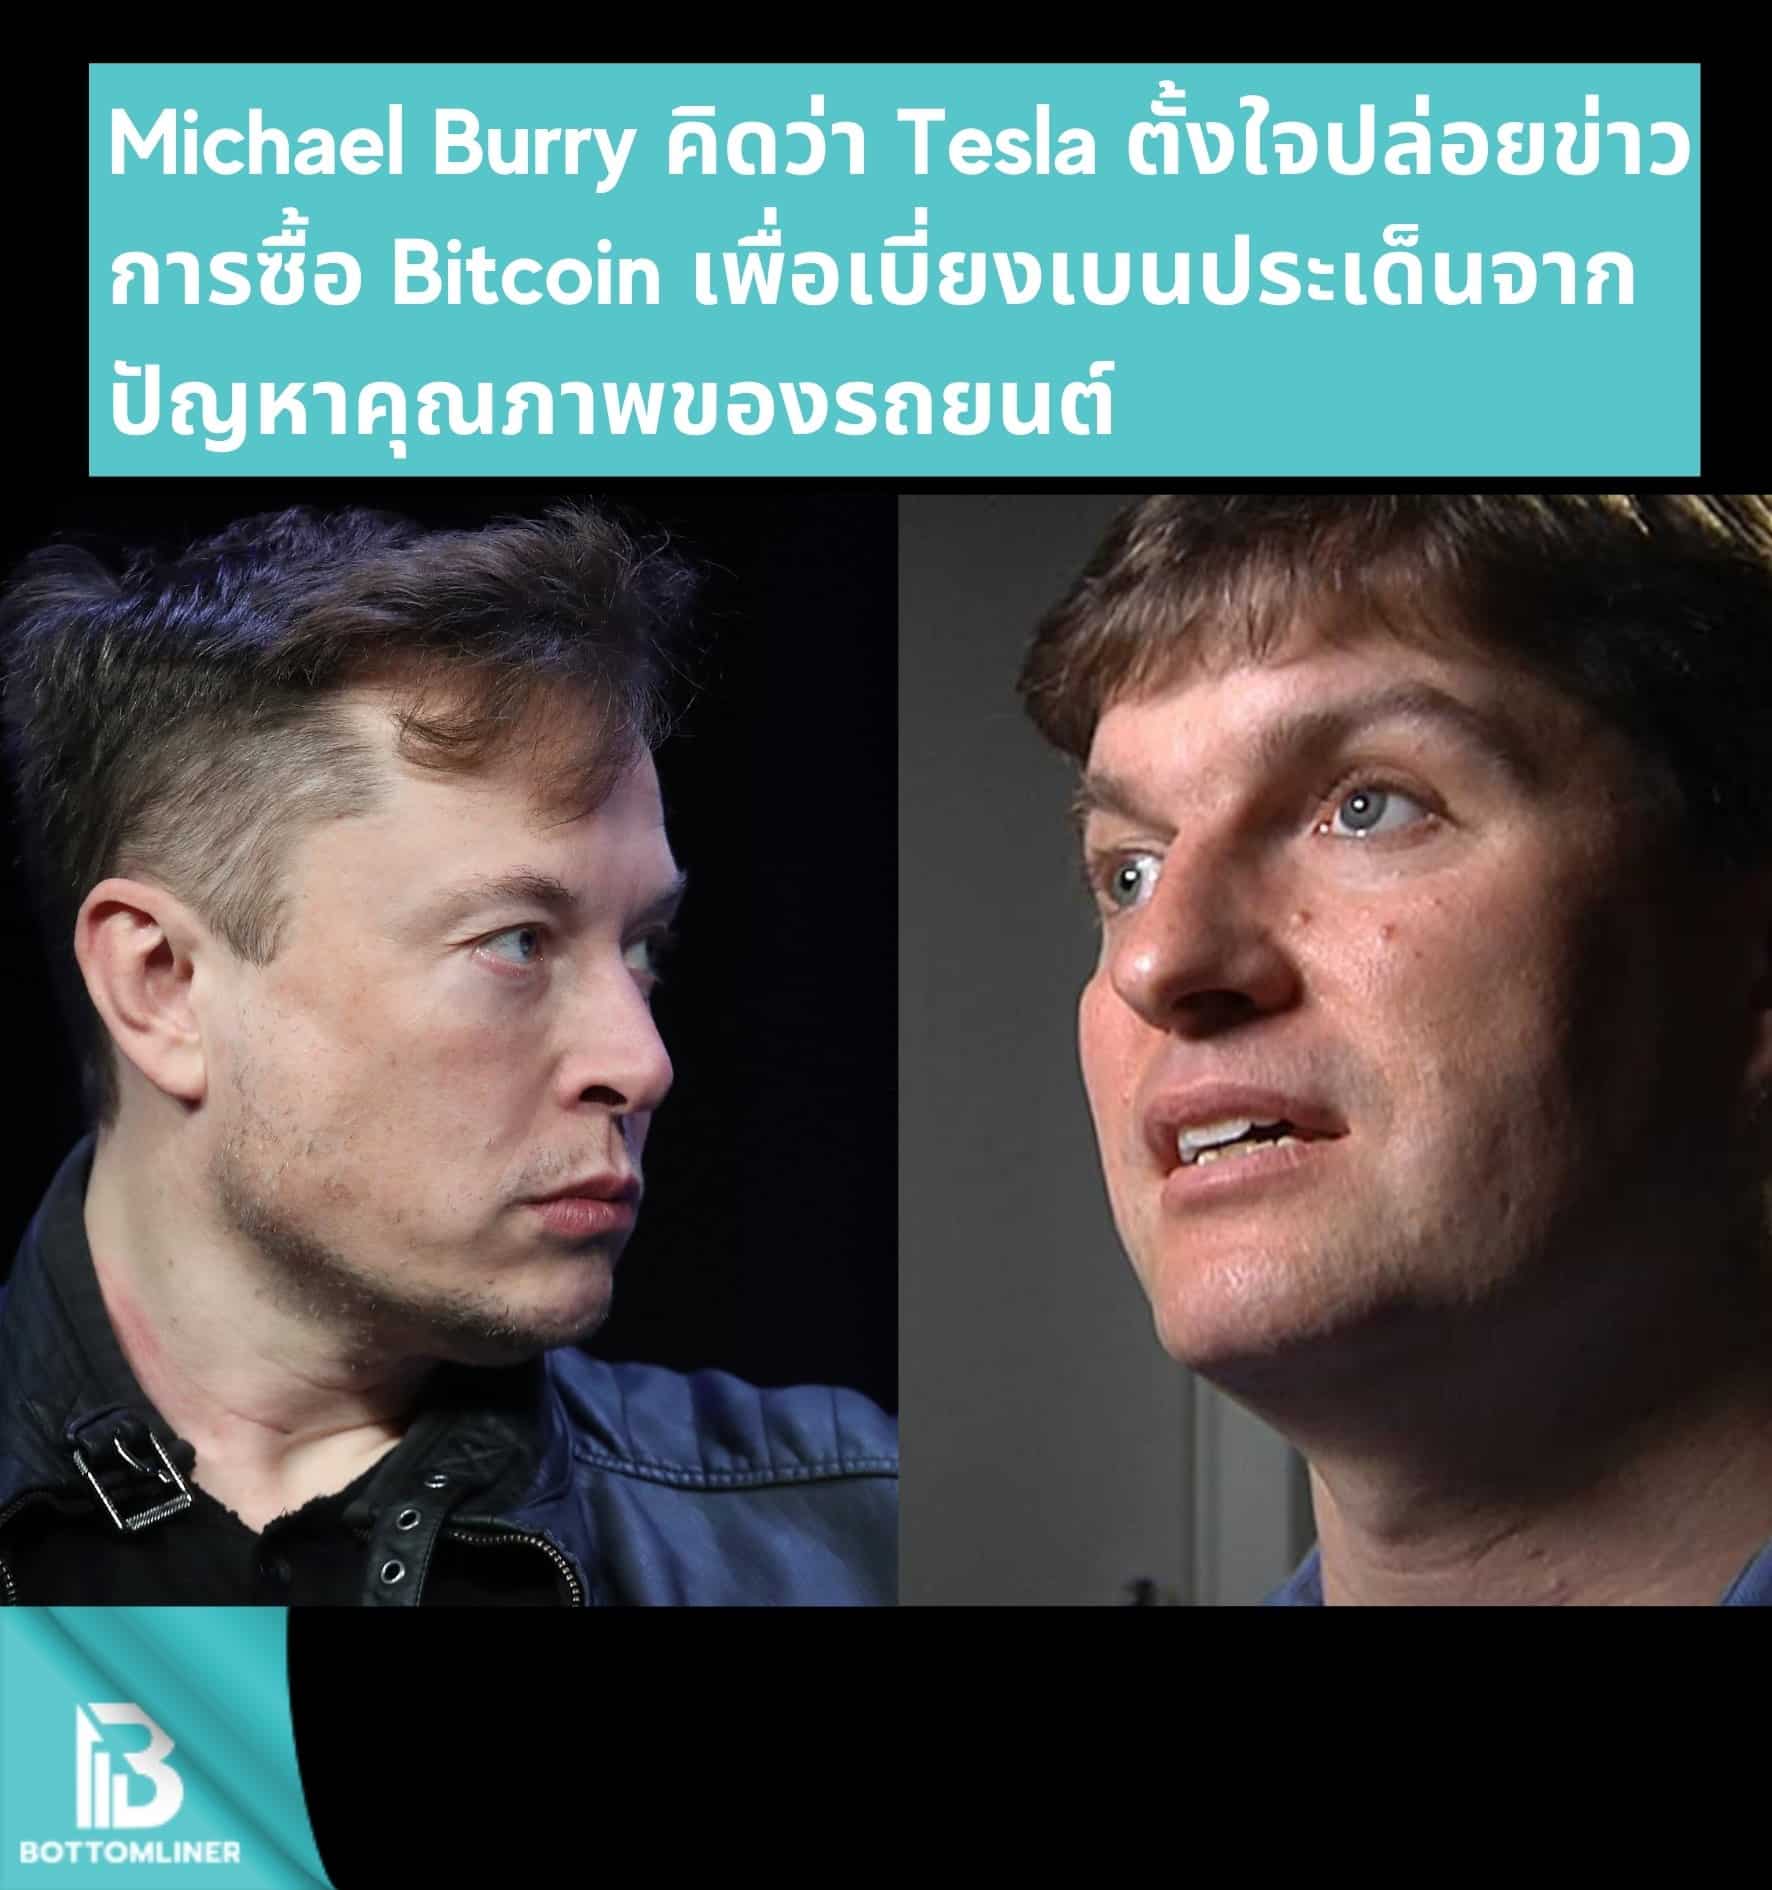 Michael Burry คิดว่า Tesla ตั้งใจ ปล่อยข่าวการซื้อ Bitcoin เพื่อเบี่ยงเบนประเด็นจากปัญหาคุณภาพรถยนต์